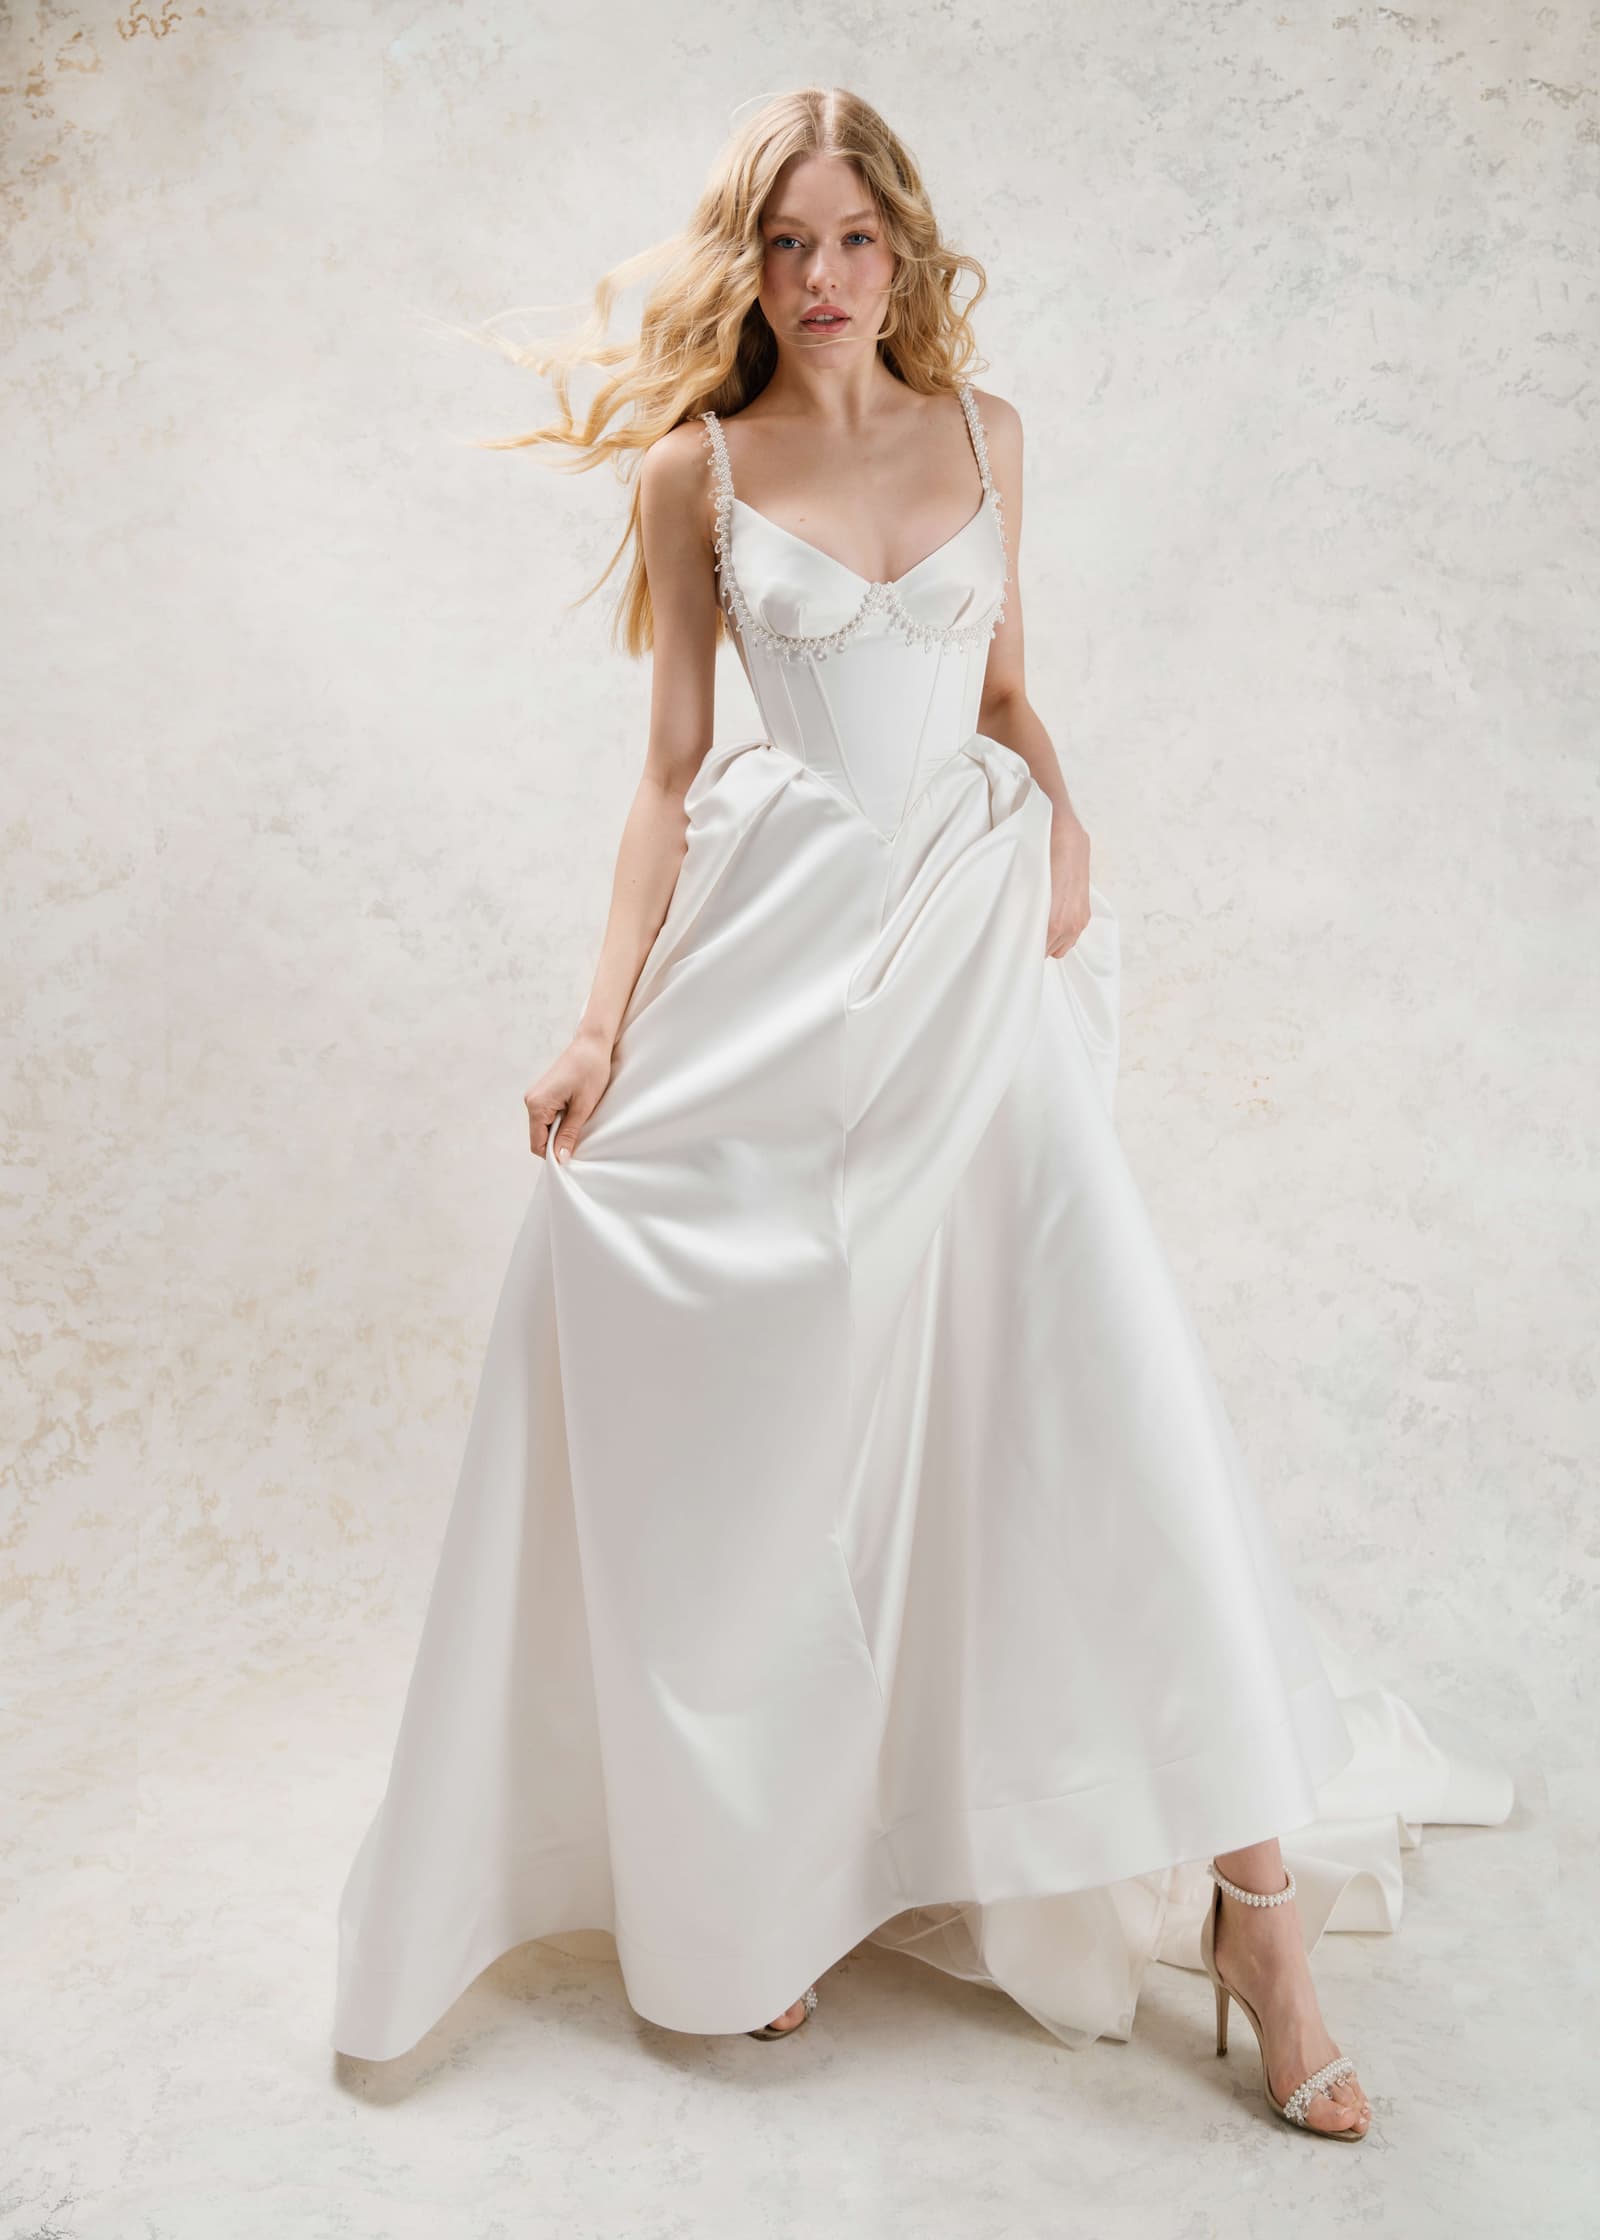 Rara Avis A-line satin couture wedding dress Murex at Dell'Amore Bridal, NZ. 8